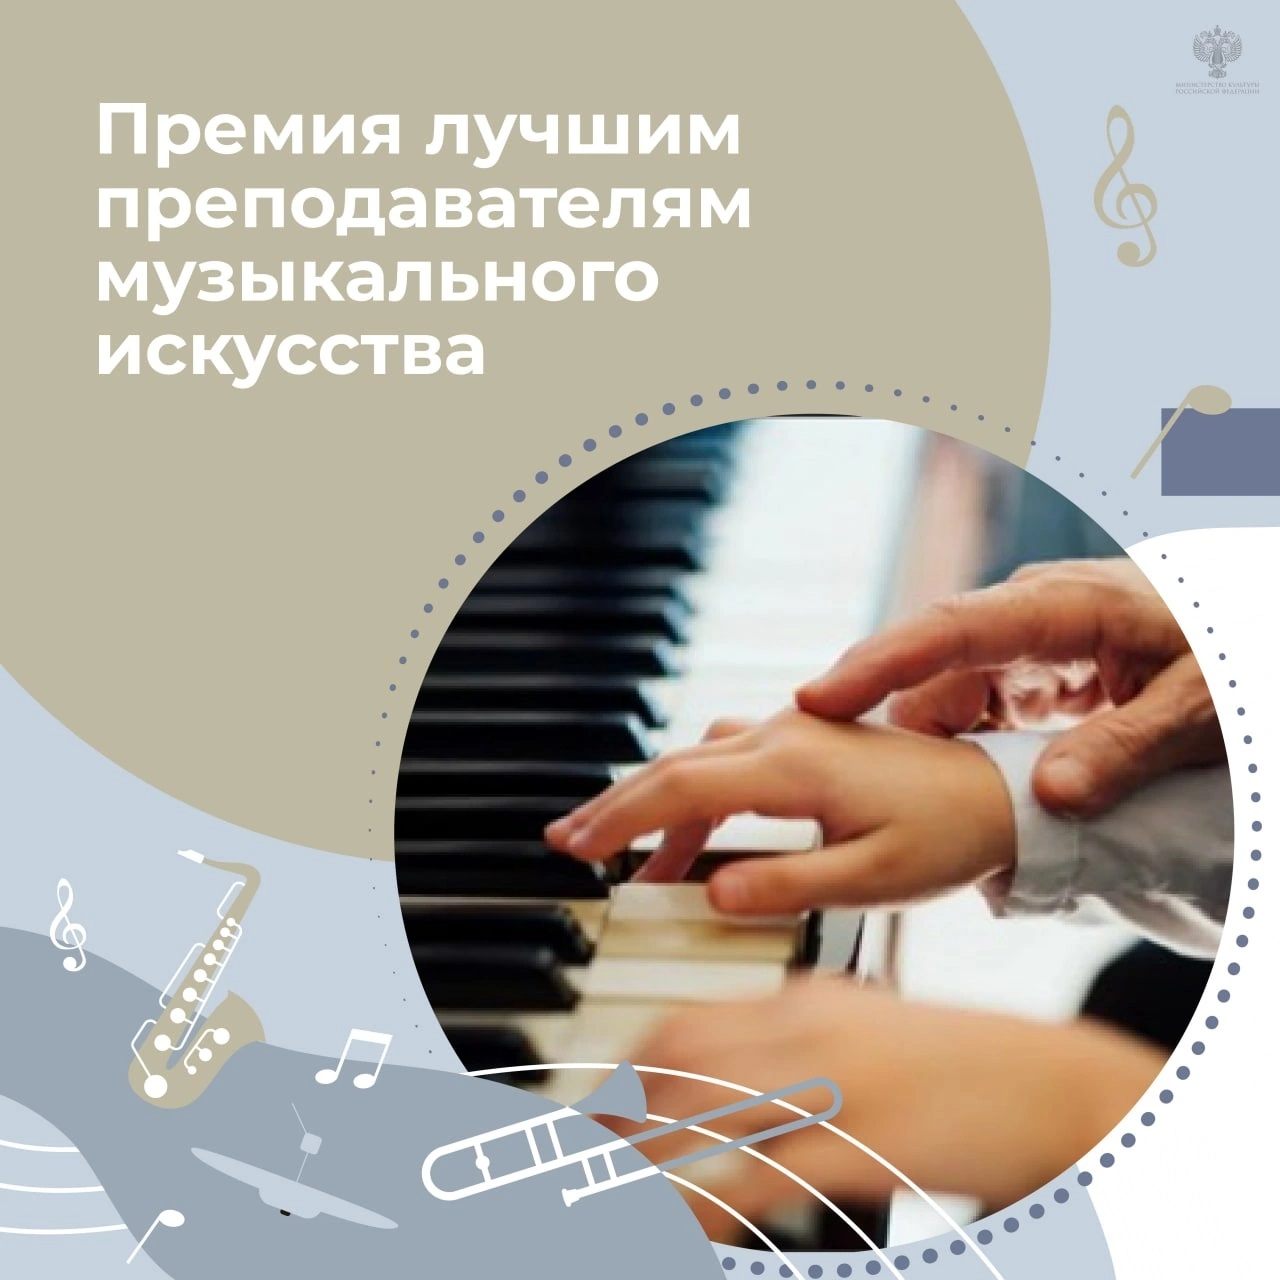 Лауреатами премий лучшим преподавателям в области музыкального искусства определены 9 преподавателей Саратовской области